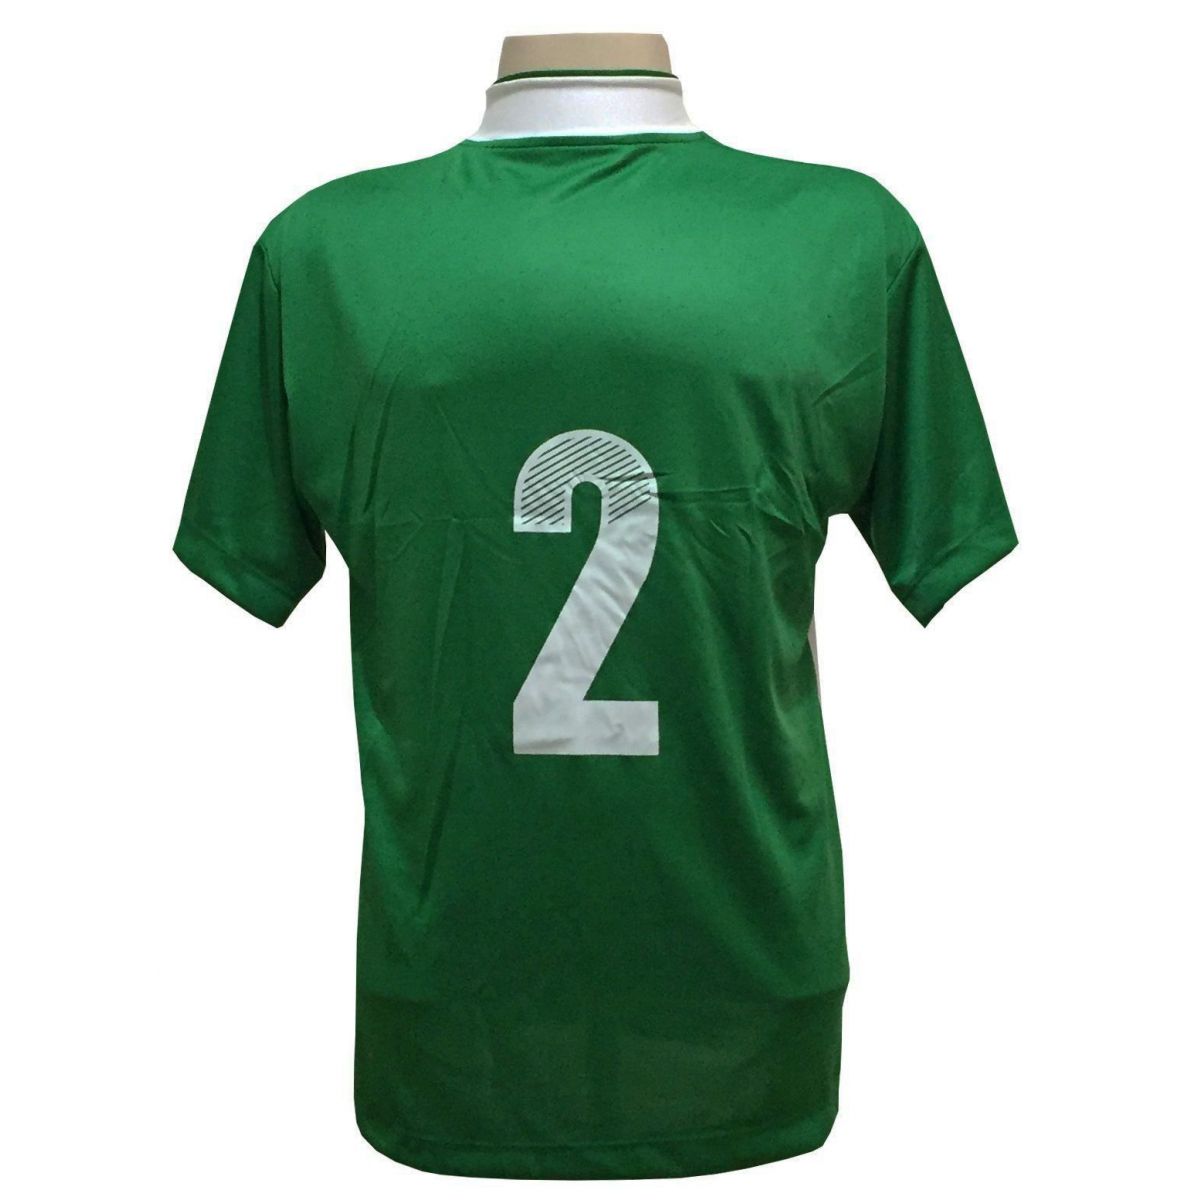 Uniforme Esportivo Completo modelo Suécia 14+1 (14 Camisas Verde/Branco + 14 Calções modelo Copa Verde/Branco + 14 Pares de Meiões Brancos + 1 Conjunto de Goleiro) + Brindes